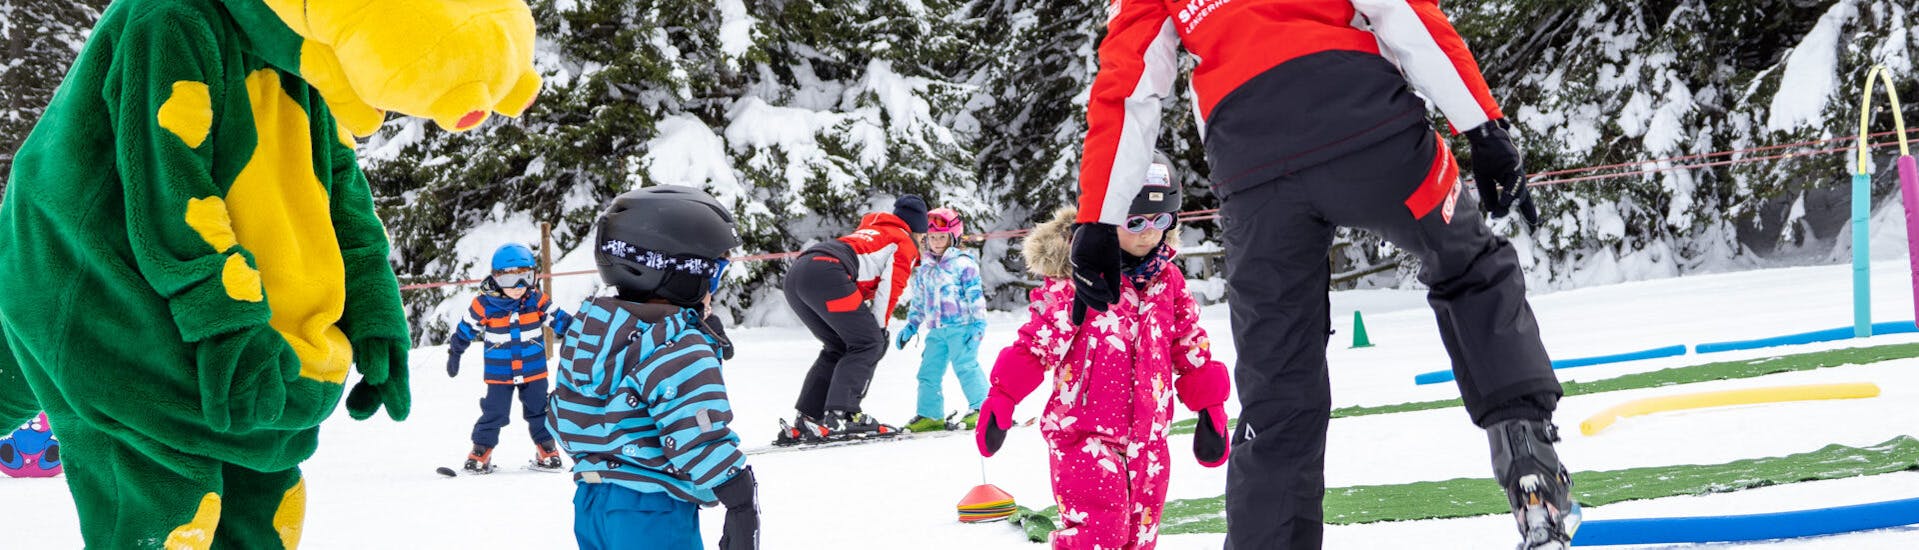 Mascotte met jonge skiër in kinderland tijdens skilessen voor kinderen bij skischool Nova.